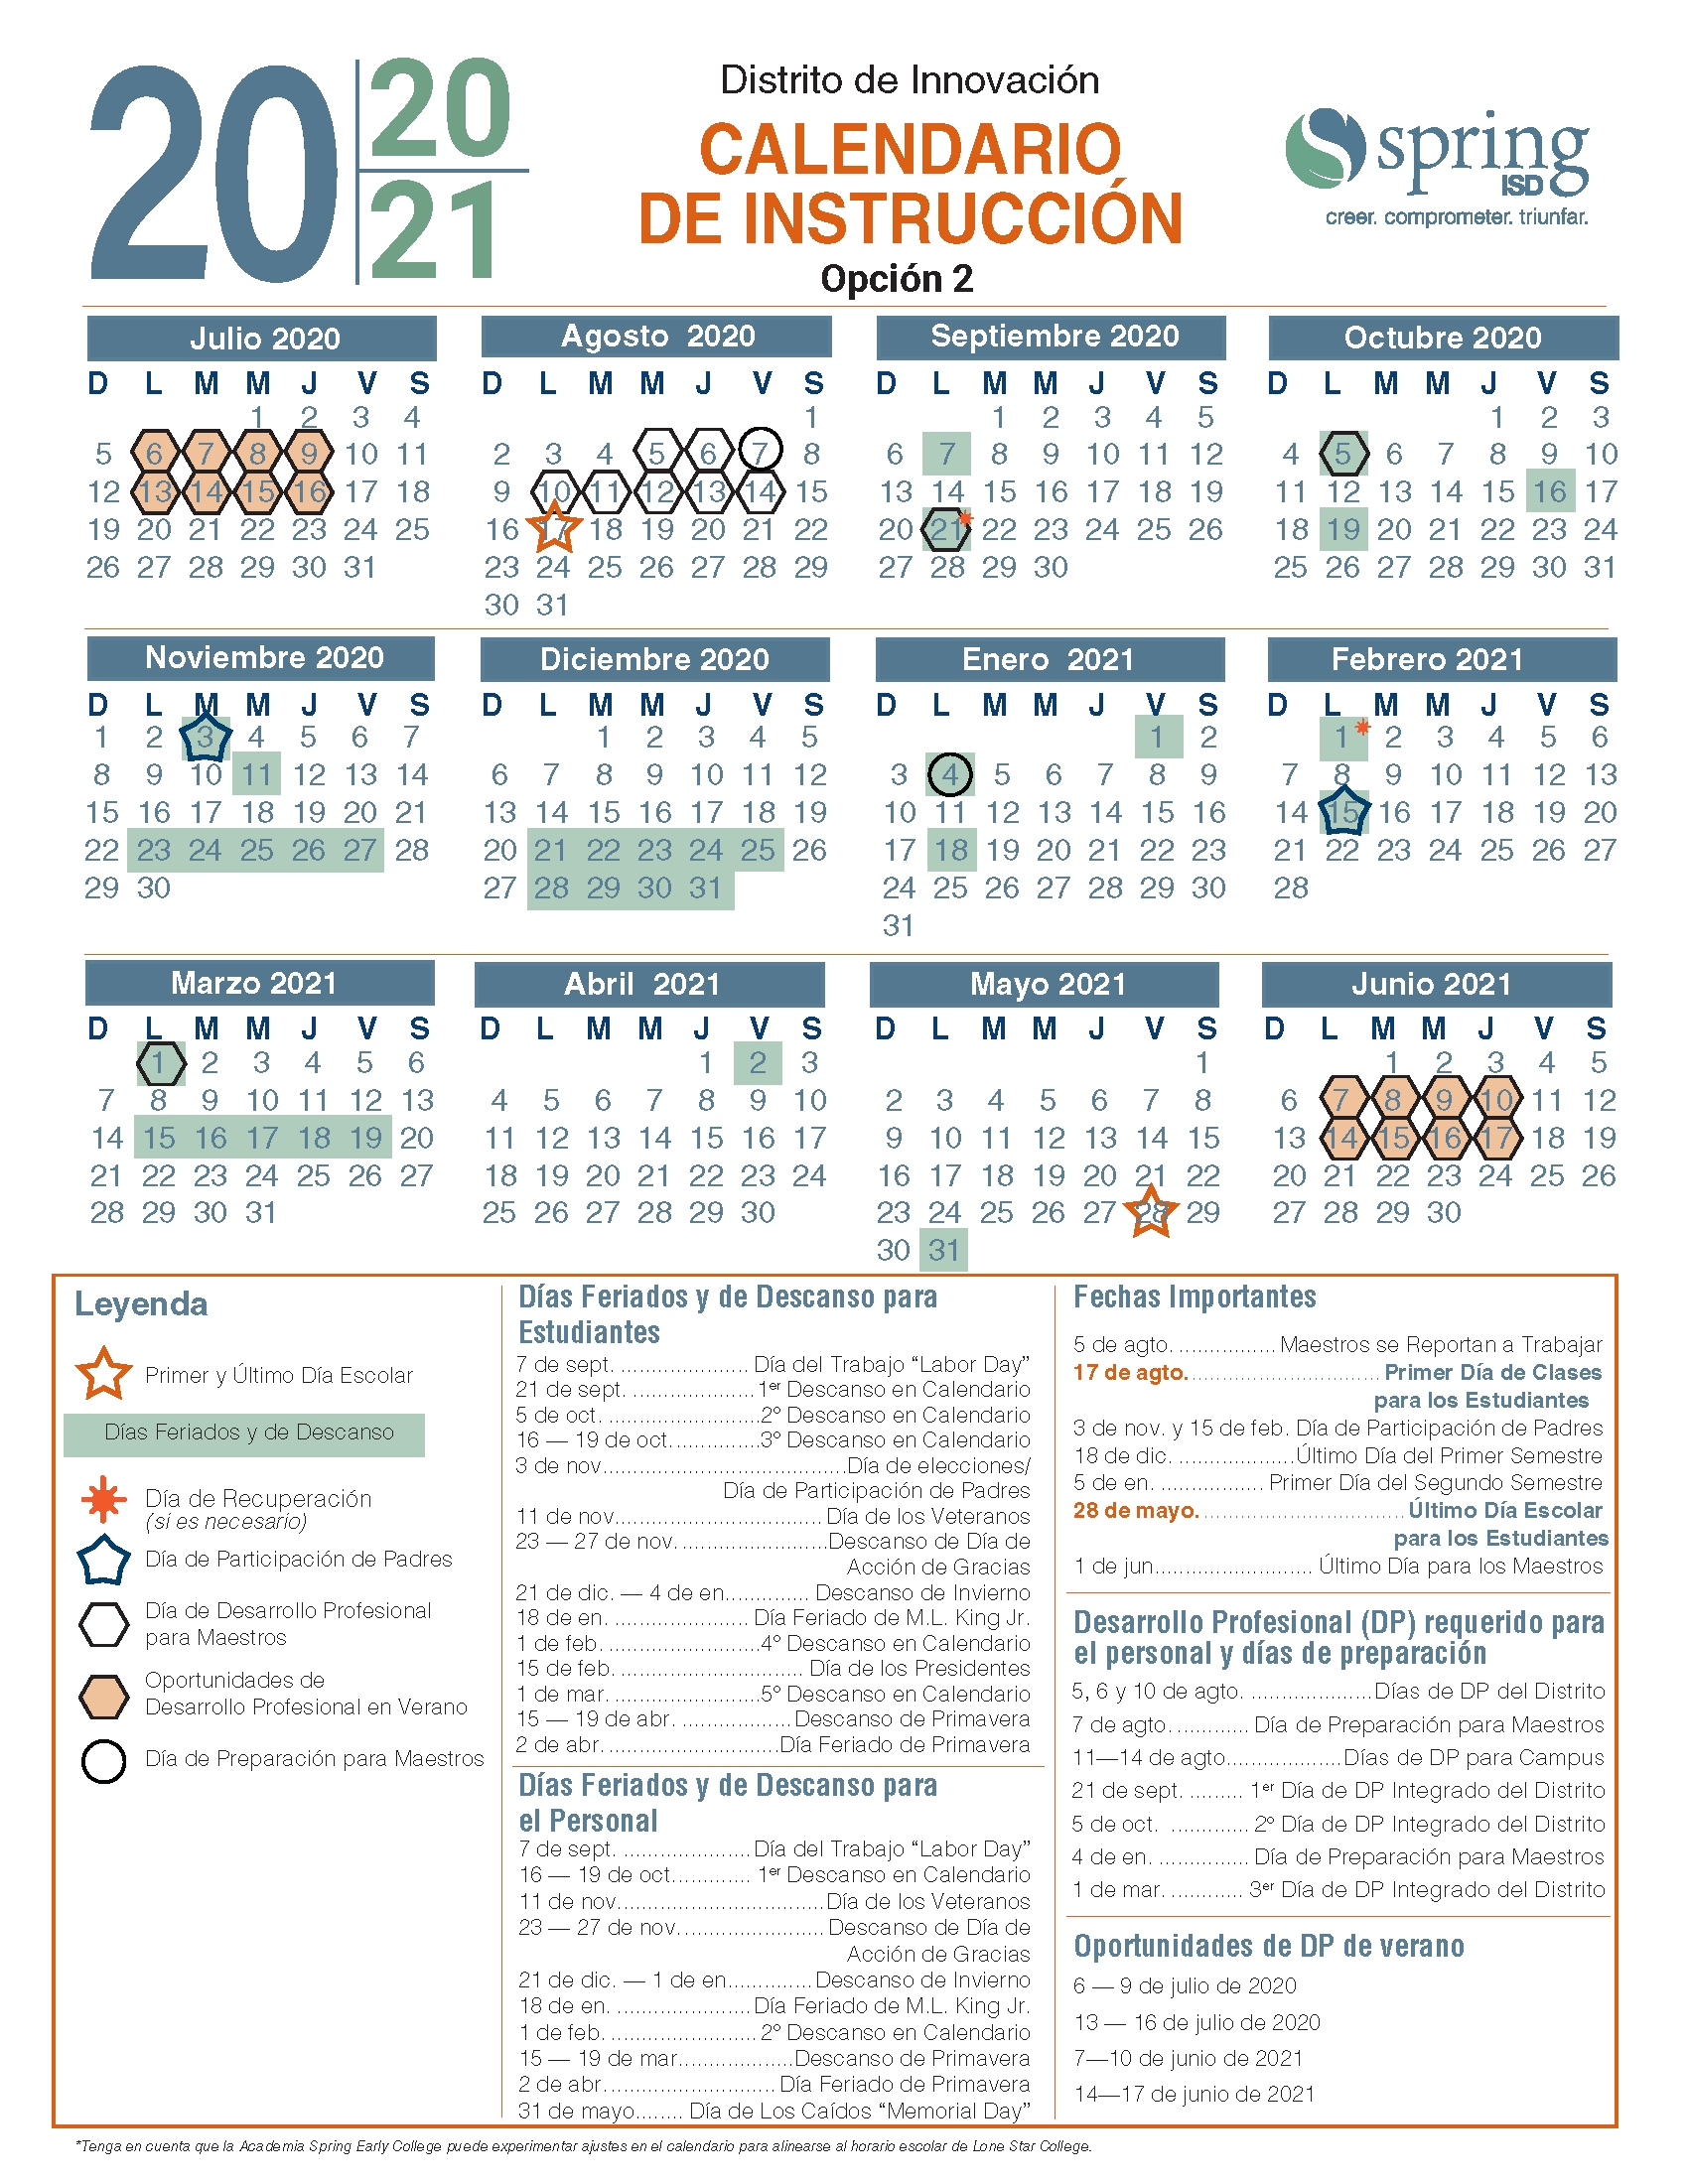 Calendar Survey / 2020-21 Instructional Calendar / Calendario De Instrucción 2020-21-Rut Prediction 2021 Louisiana